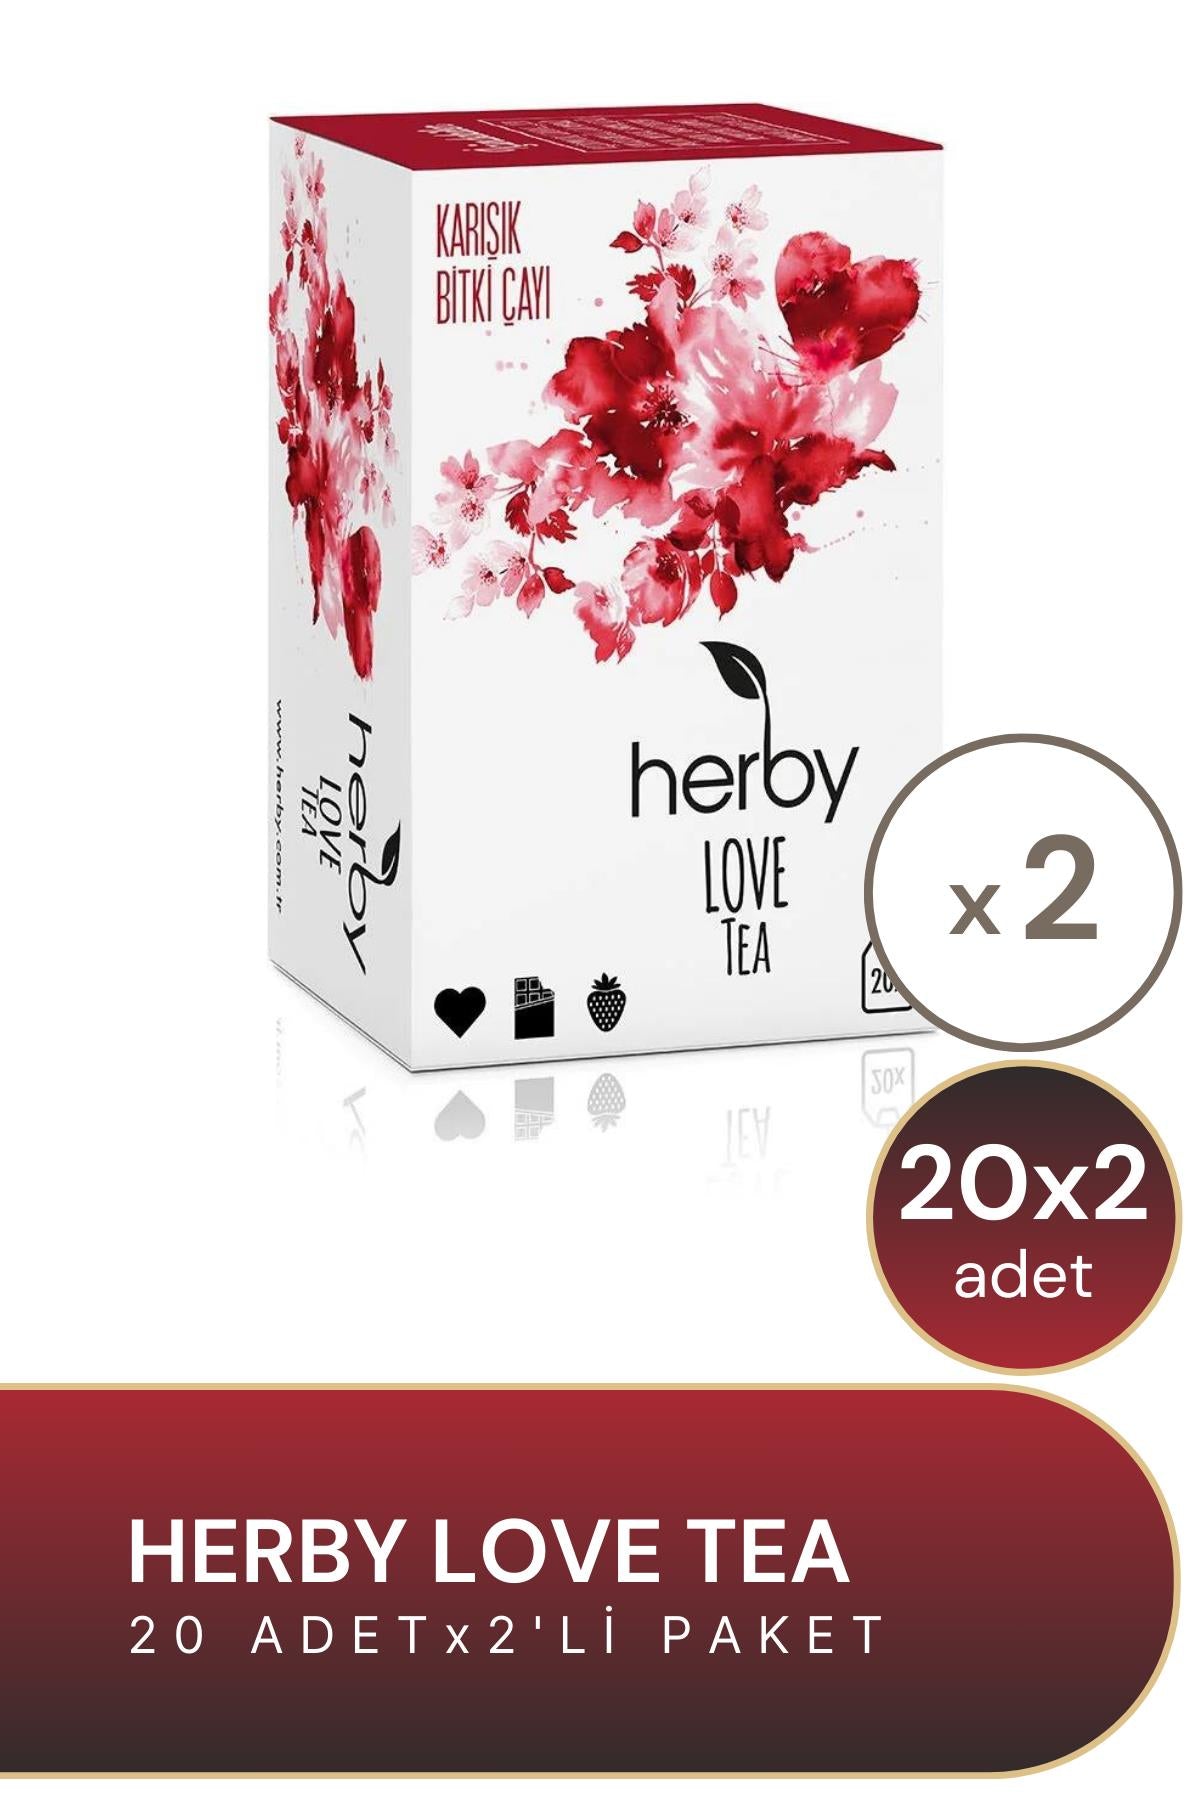 Herby Love Tea 20'li Bitki Çayı 2'li Paket